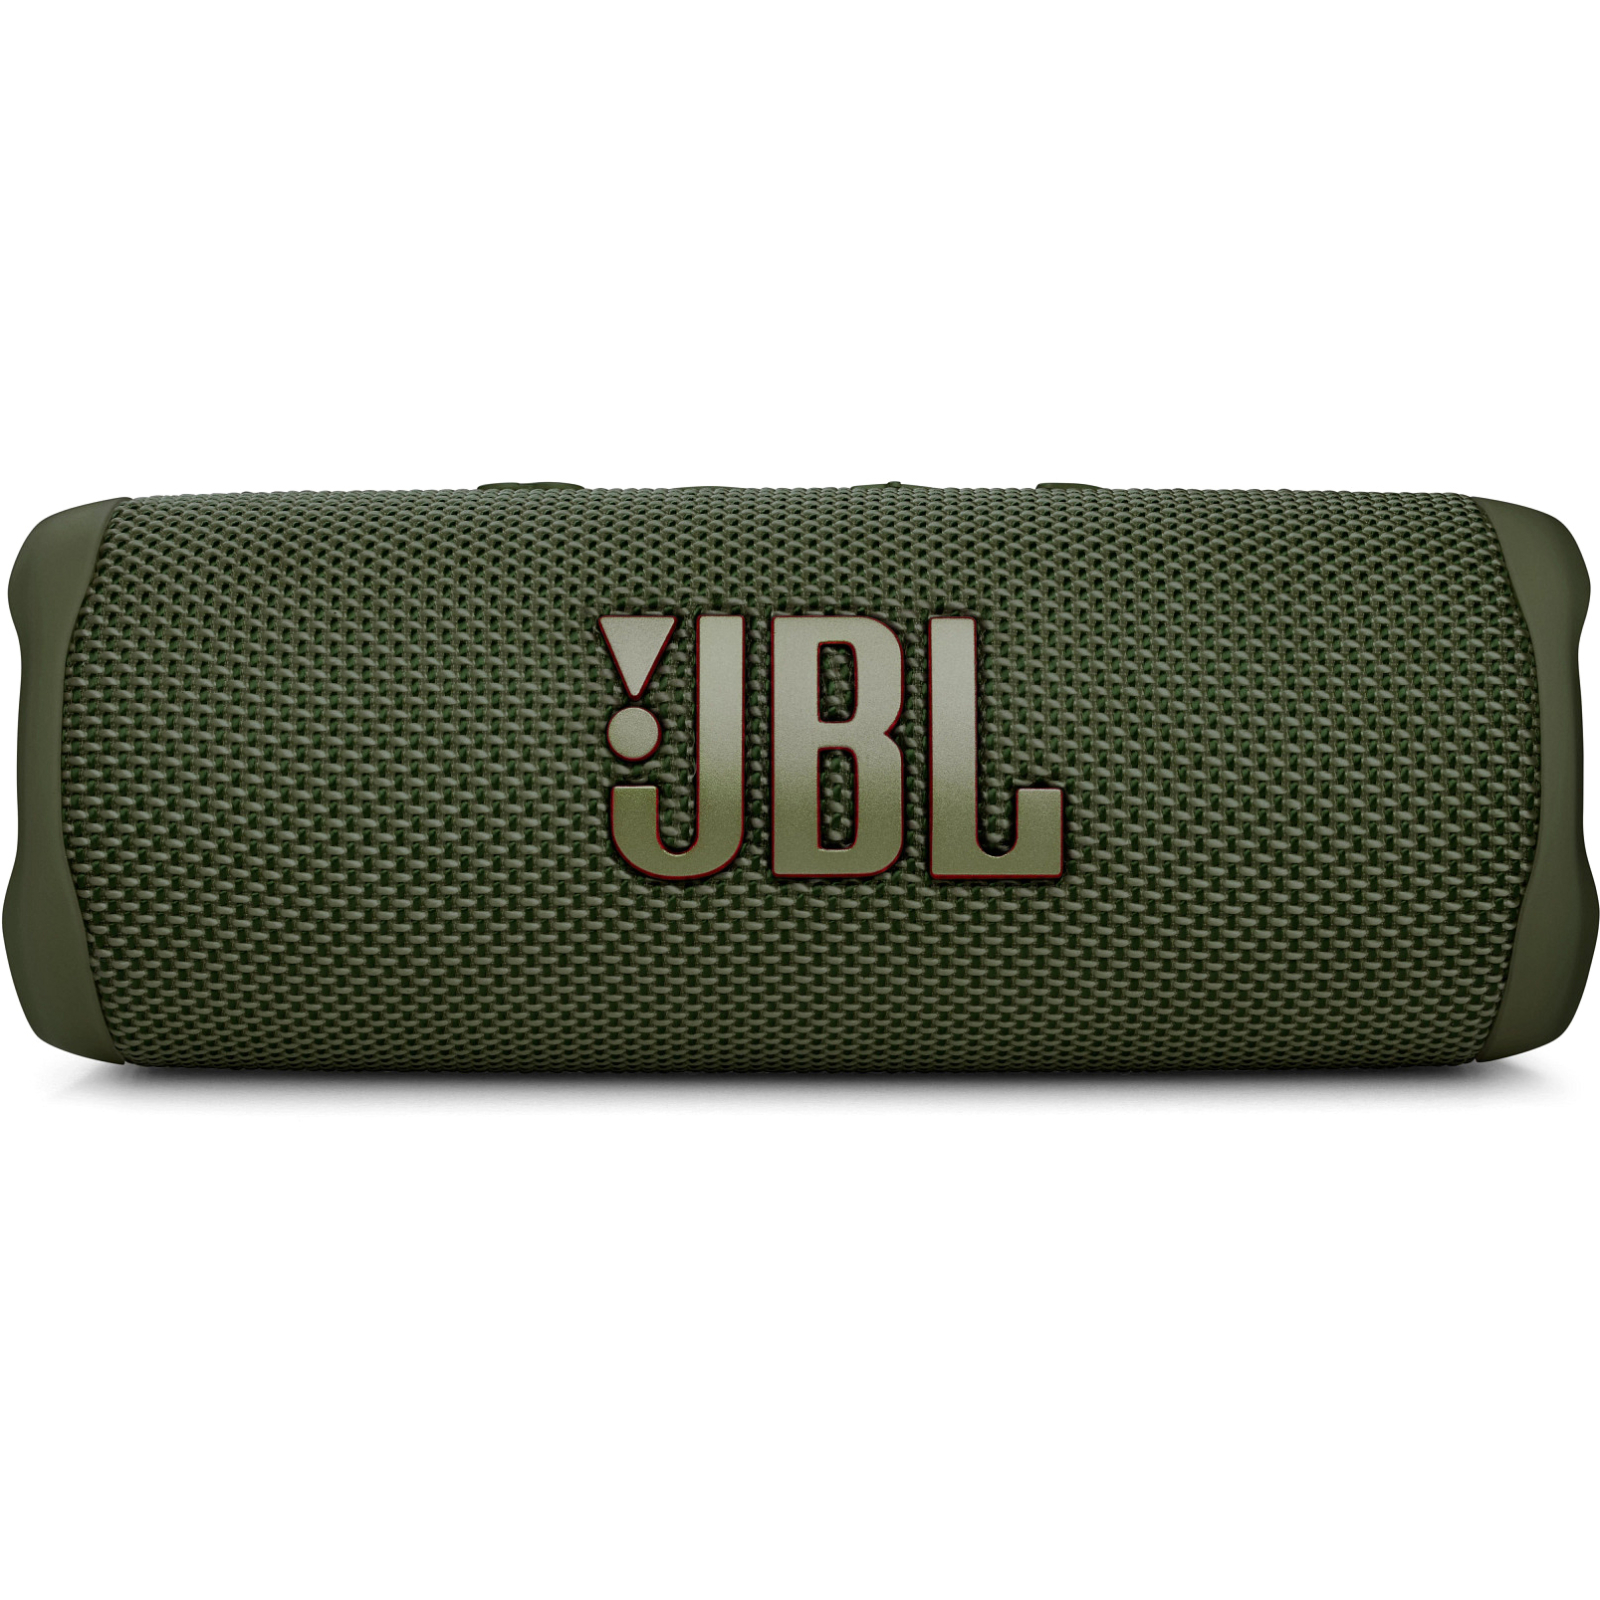 Акустична система JBL Flip 6 Blue (JBLFLIP6BLU)